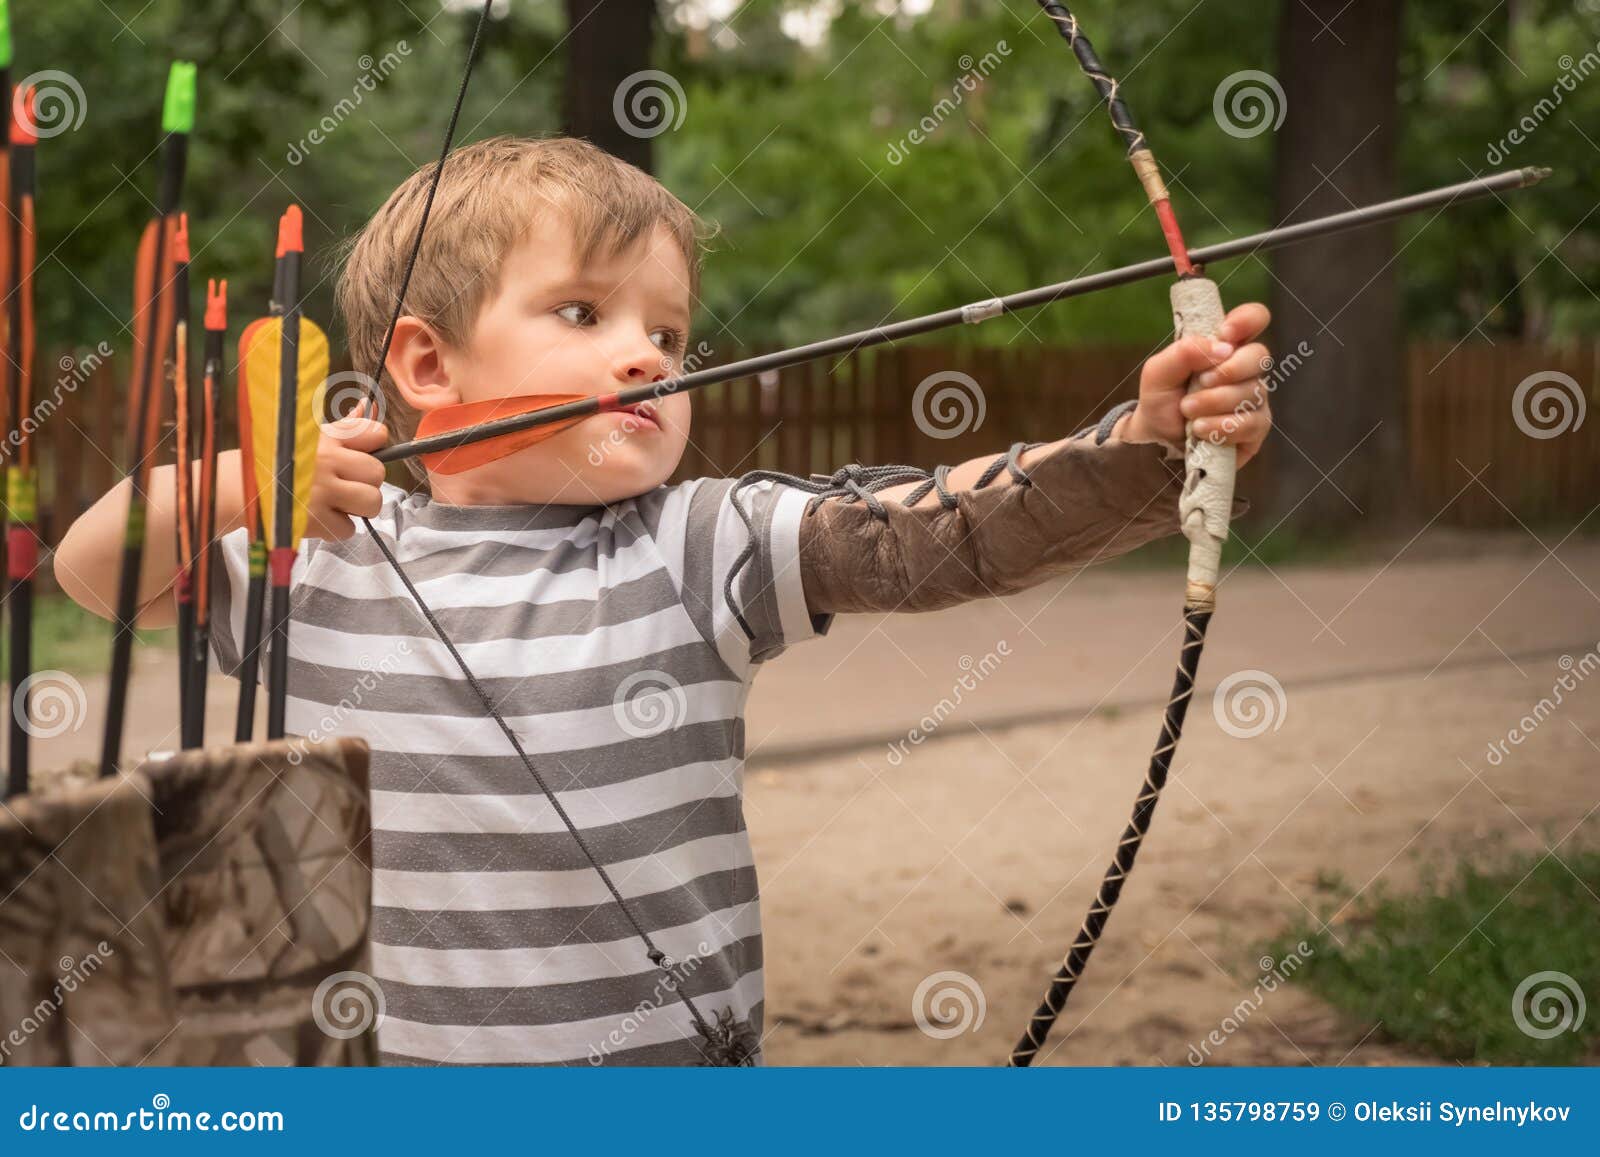 Garçon Avec Un Tir à L'arc Enfants Et Sports Image stock - Image du enfant,  fond: 135798759